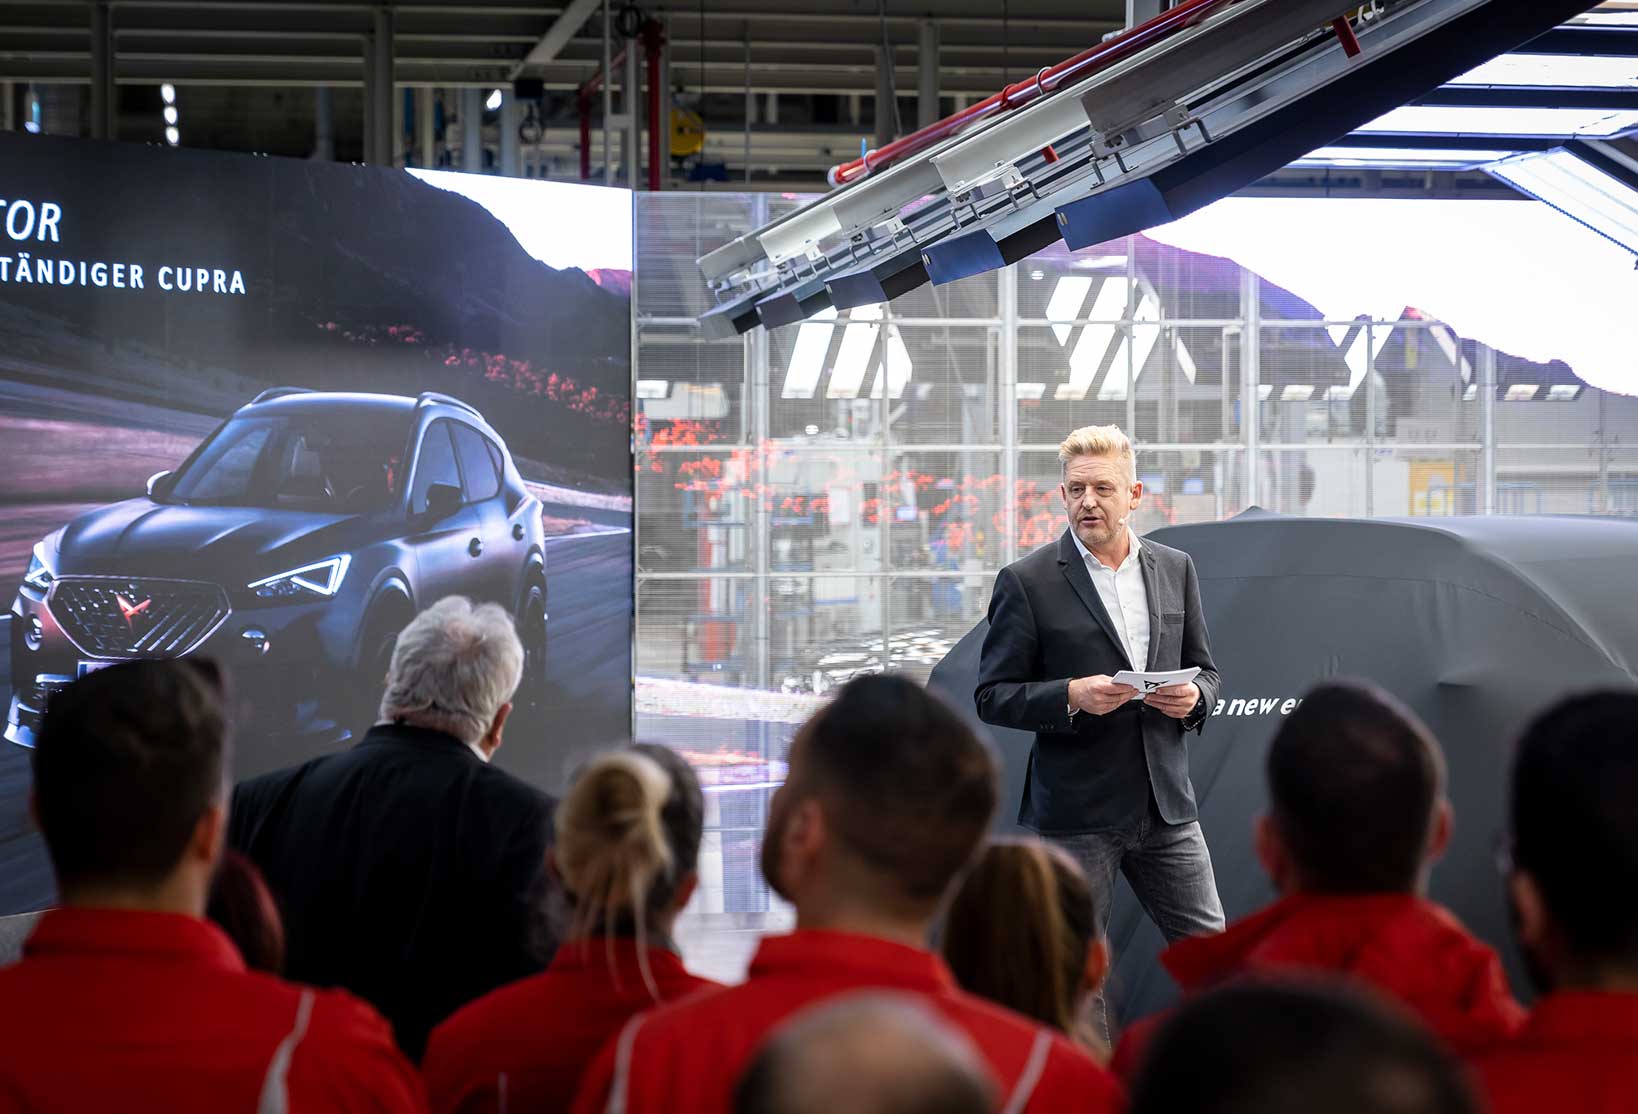 CUPRA devela CUPRA Terramar ante los trabajadores de Audi Hungaria que participarán en su producción